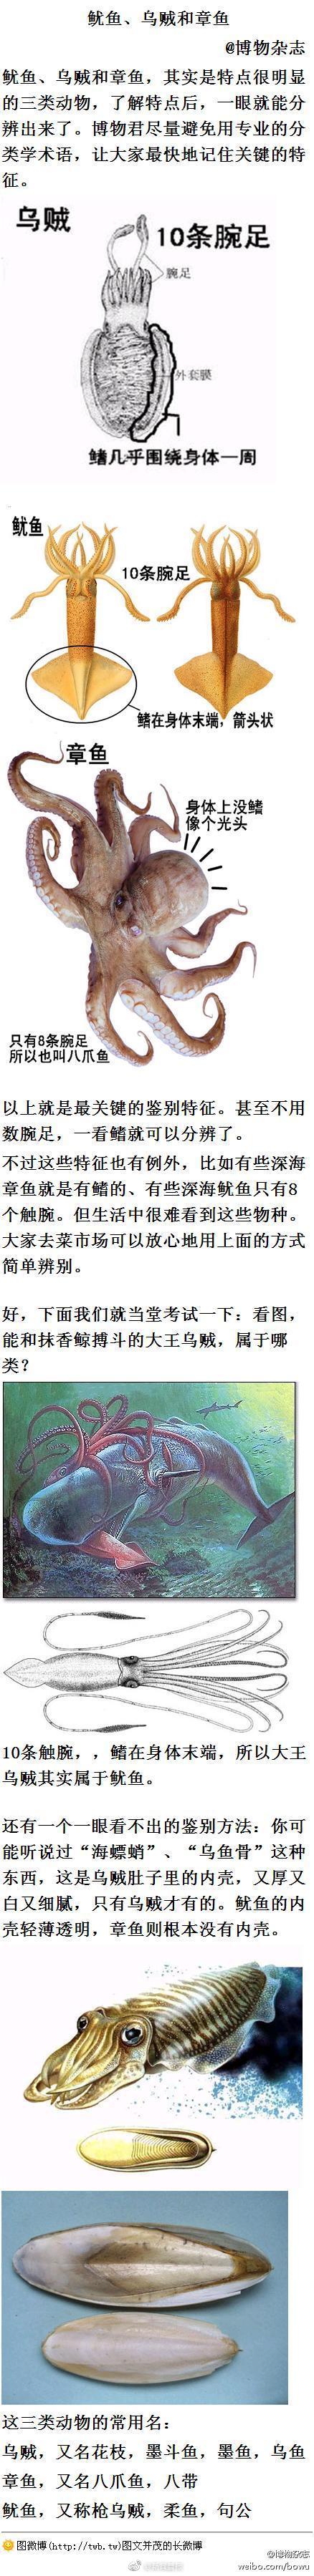 乌贼章鱼鱿鱼的区别(深入解析乌贼、章鱼、鱿鱼的独特之处)